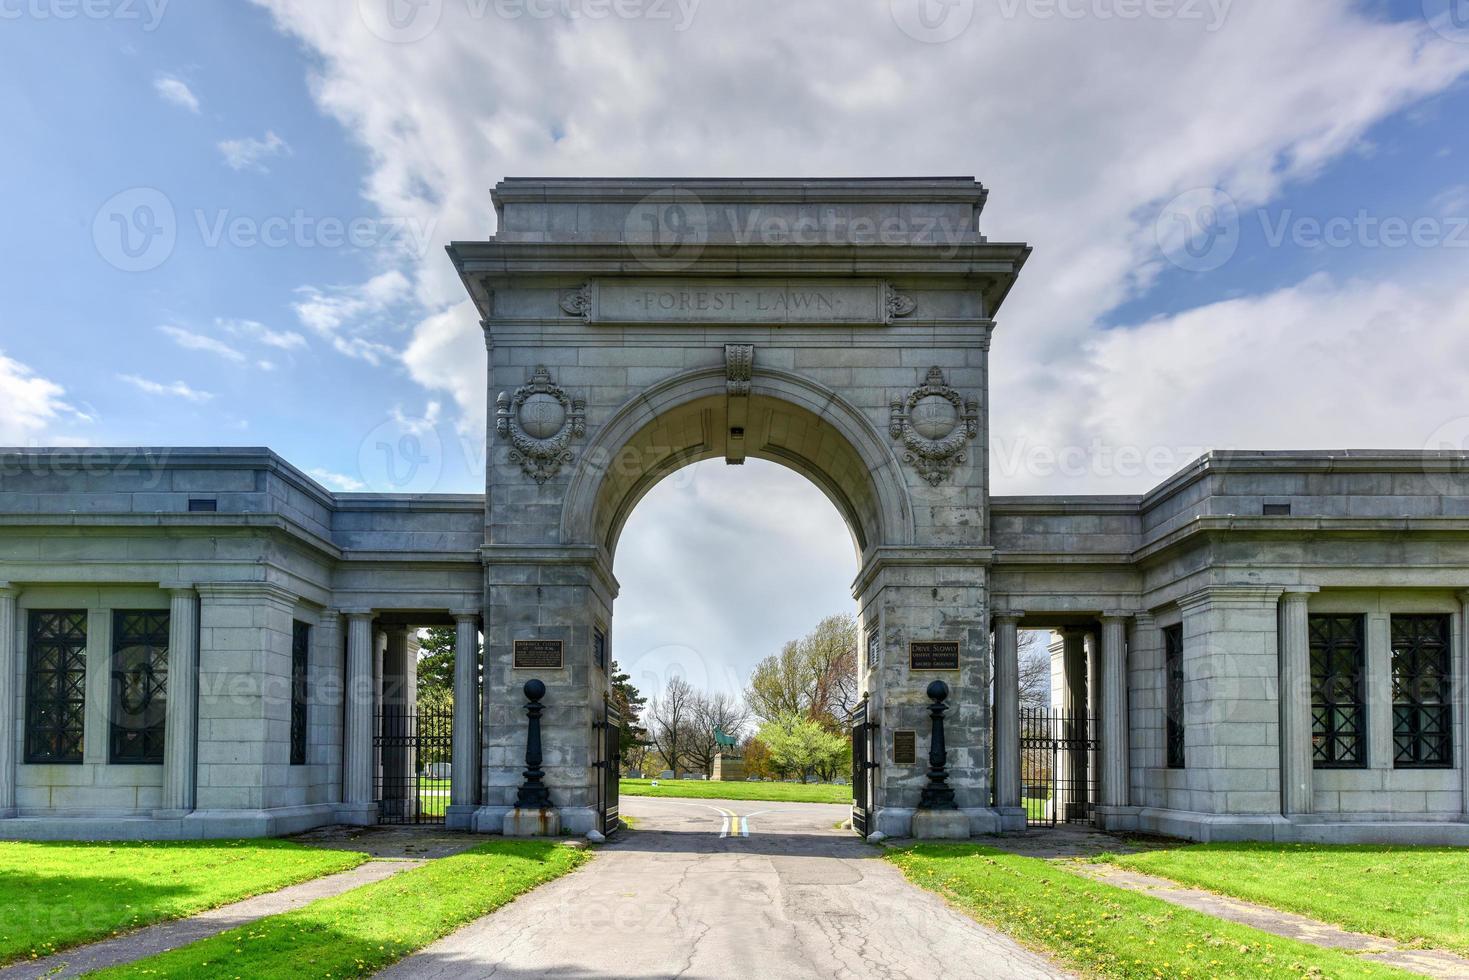 Cementerio Forest Lawn en Buffalo, Nueva York. monumentos, mausoleos y esculturas atraen visitantes desde hace más de 150 años foto